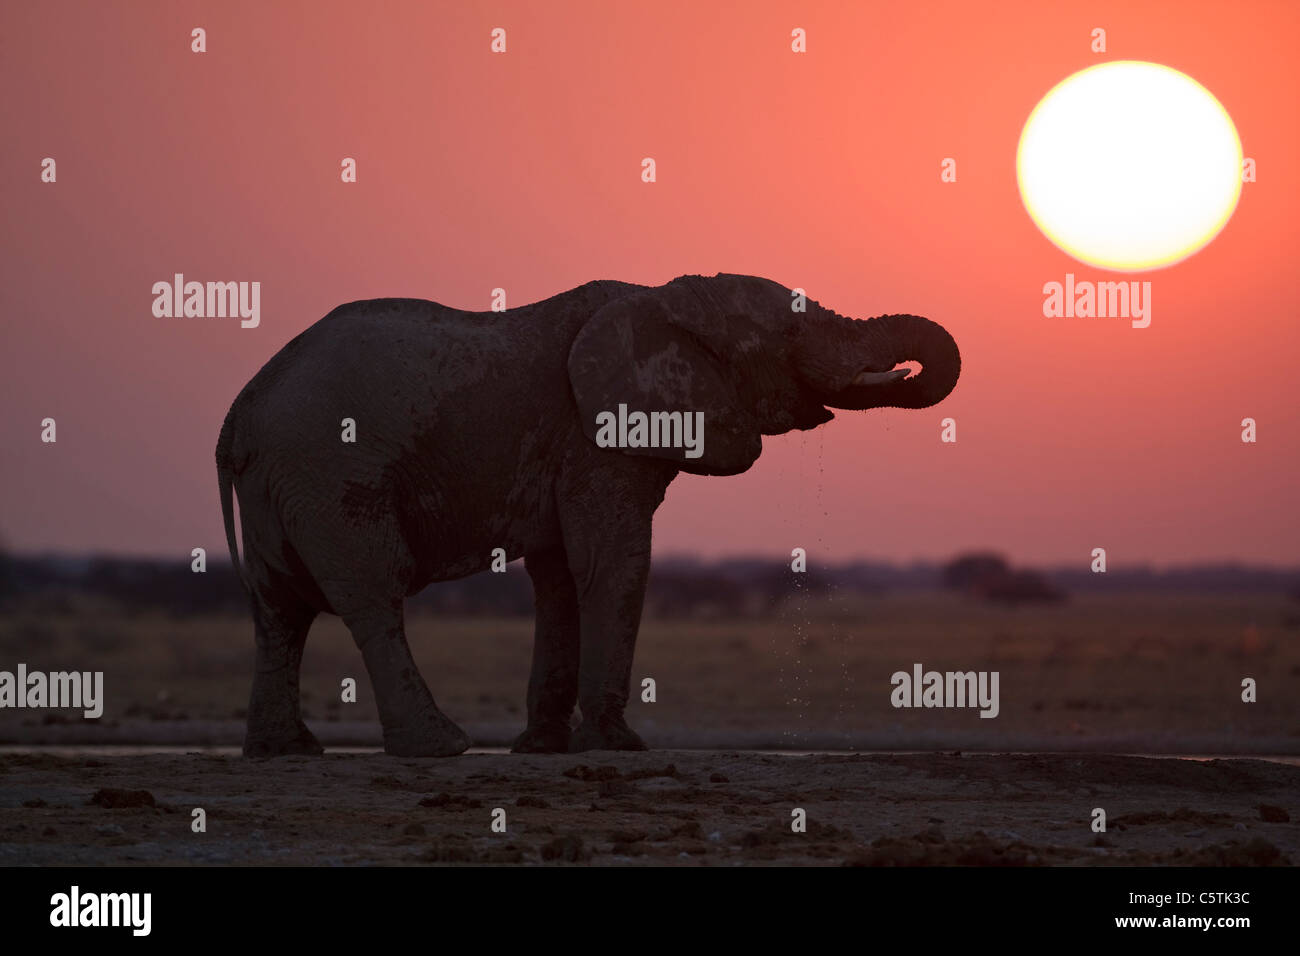 Africa, Botswana, African elephant (Loxodonta africana) at sunset Stock Photo